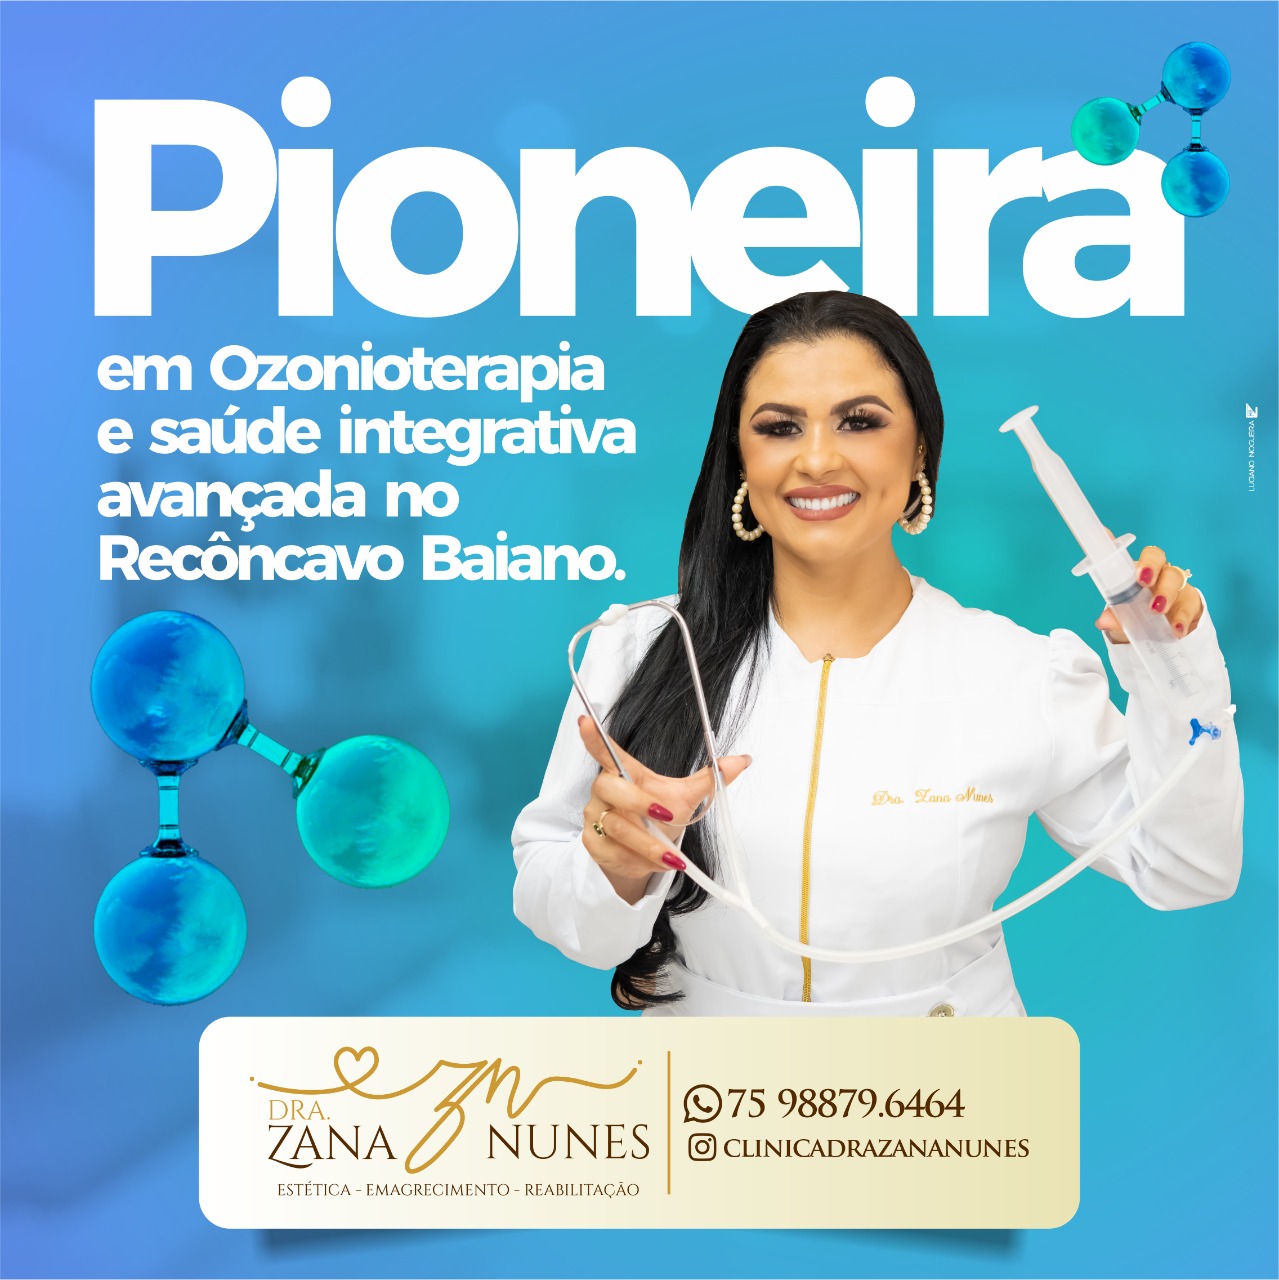 Pioneira em ozonioterapia, a Drª Zana Nunes atua com saúde integrativa avançada no Recôncavo Baiano